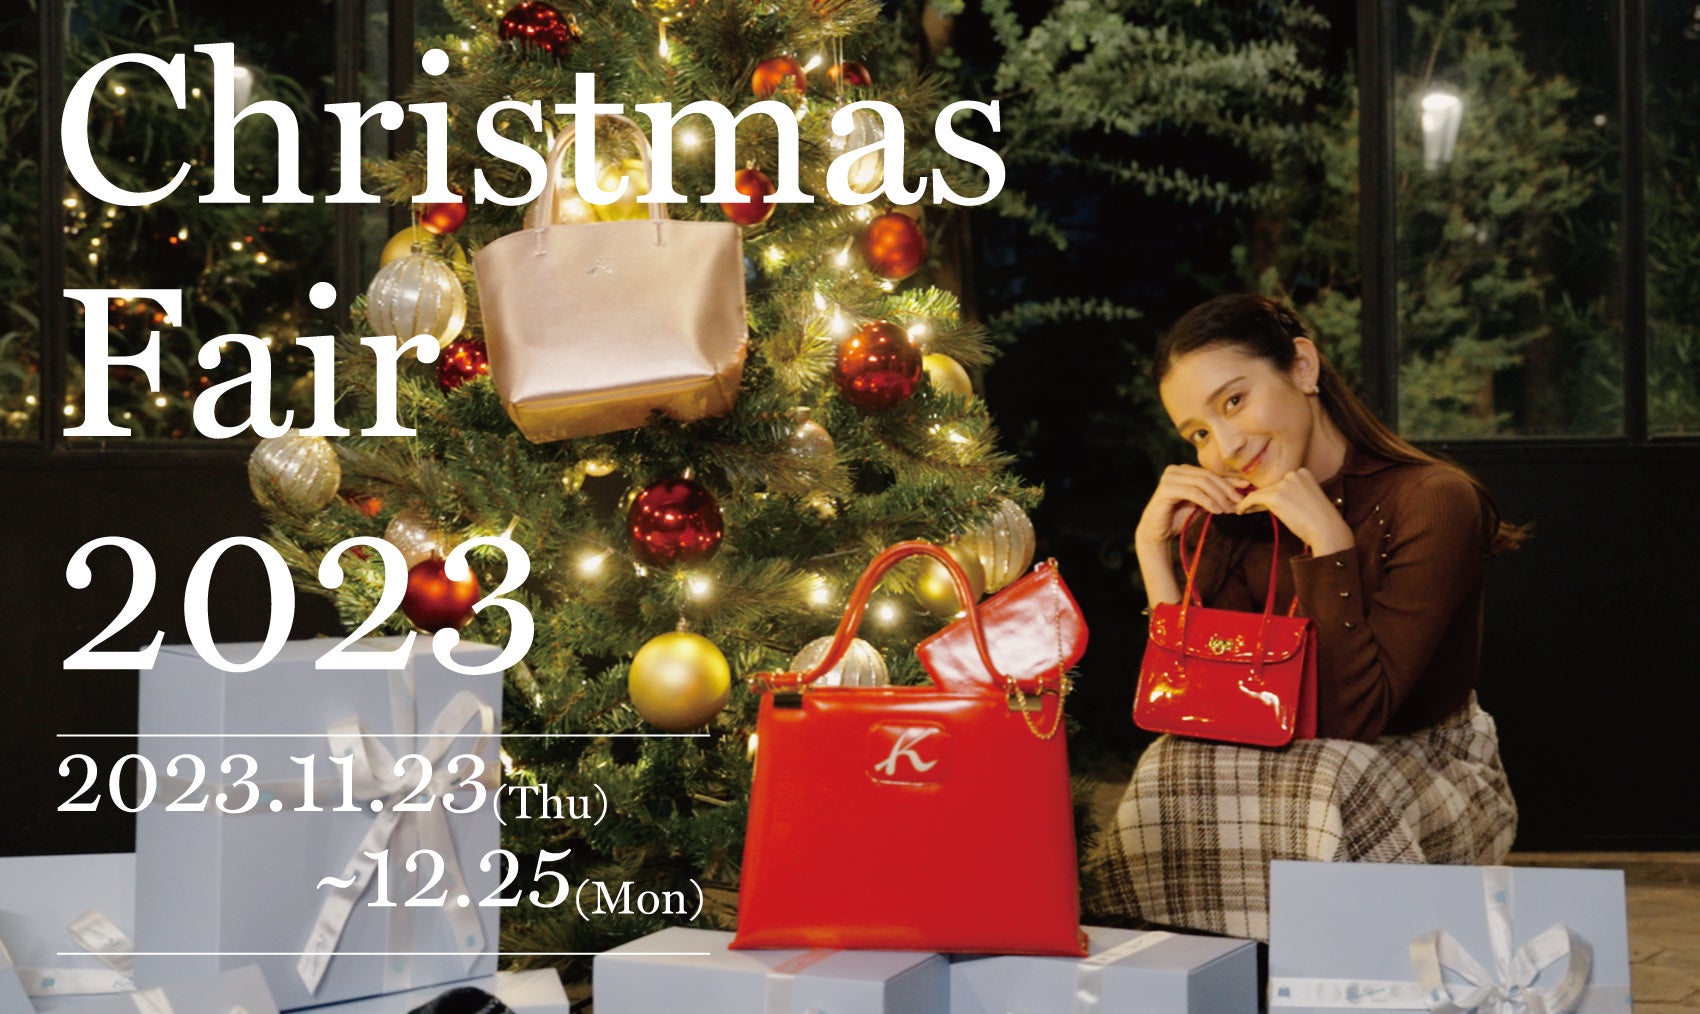 横浜元町のオリジナルバッグブランド「キタムラ」が11月23日(木・祝)より、全国のキタムラショップとオンラインショップにて”キタムラ クリスマスフェア2023″を開催！